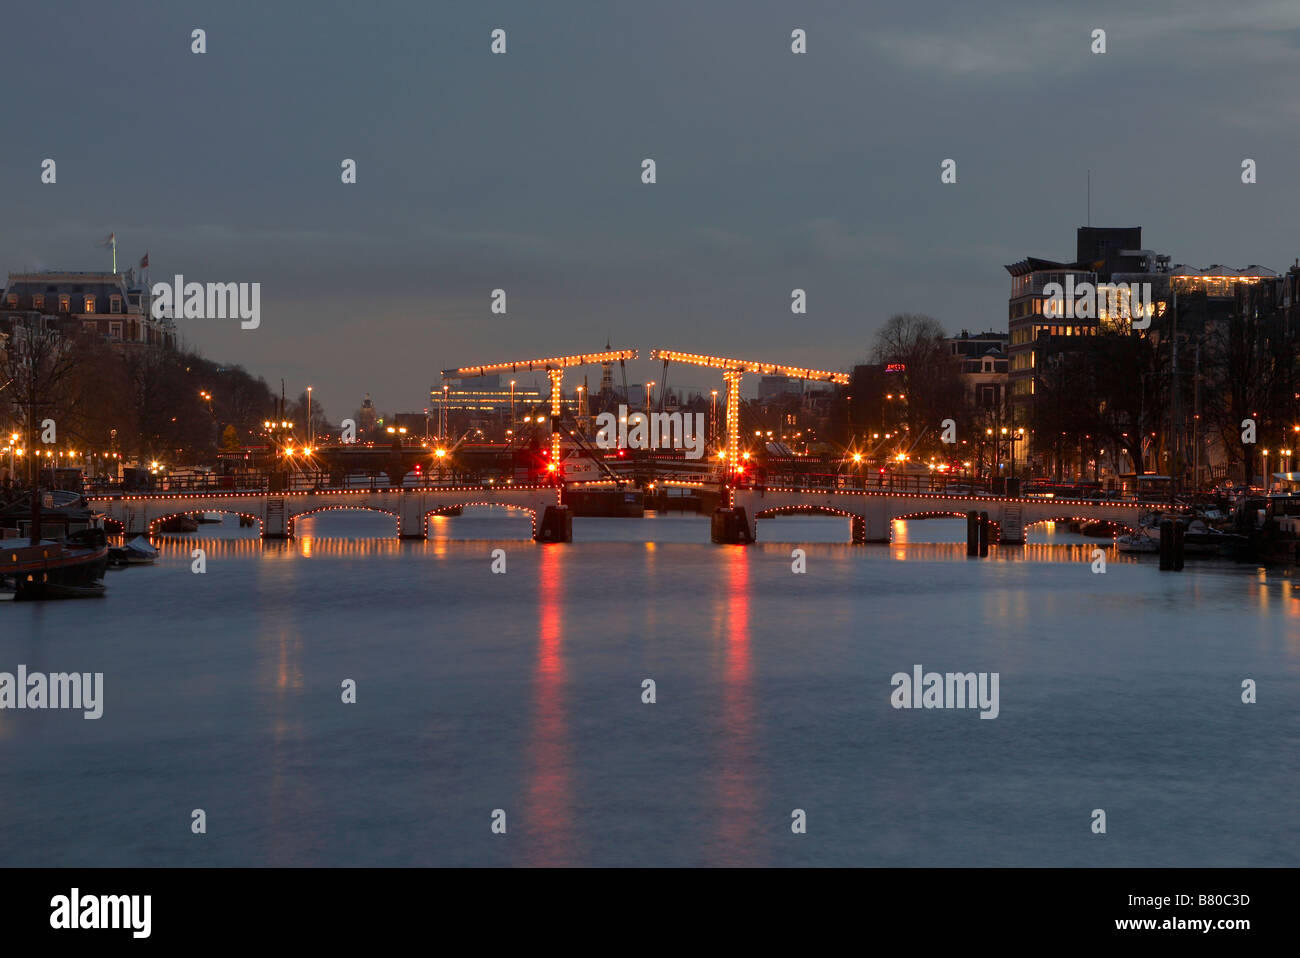 Magere Brug (pont Maigre) au cours de l'Amstel, Amsterdam, Pays-Bas Banque D'Images